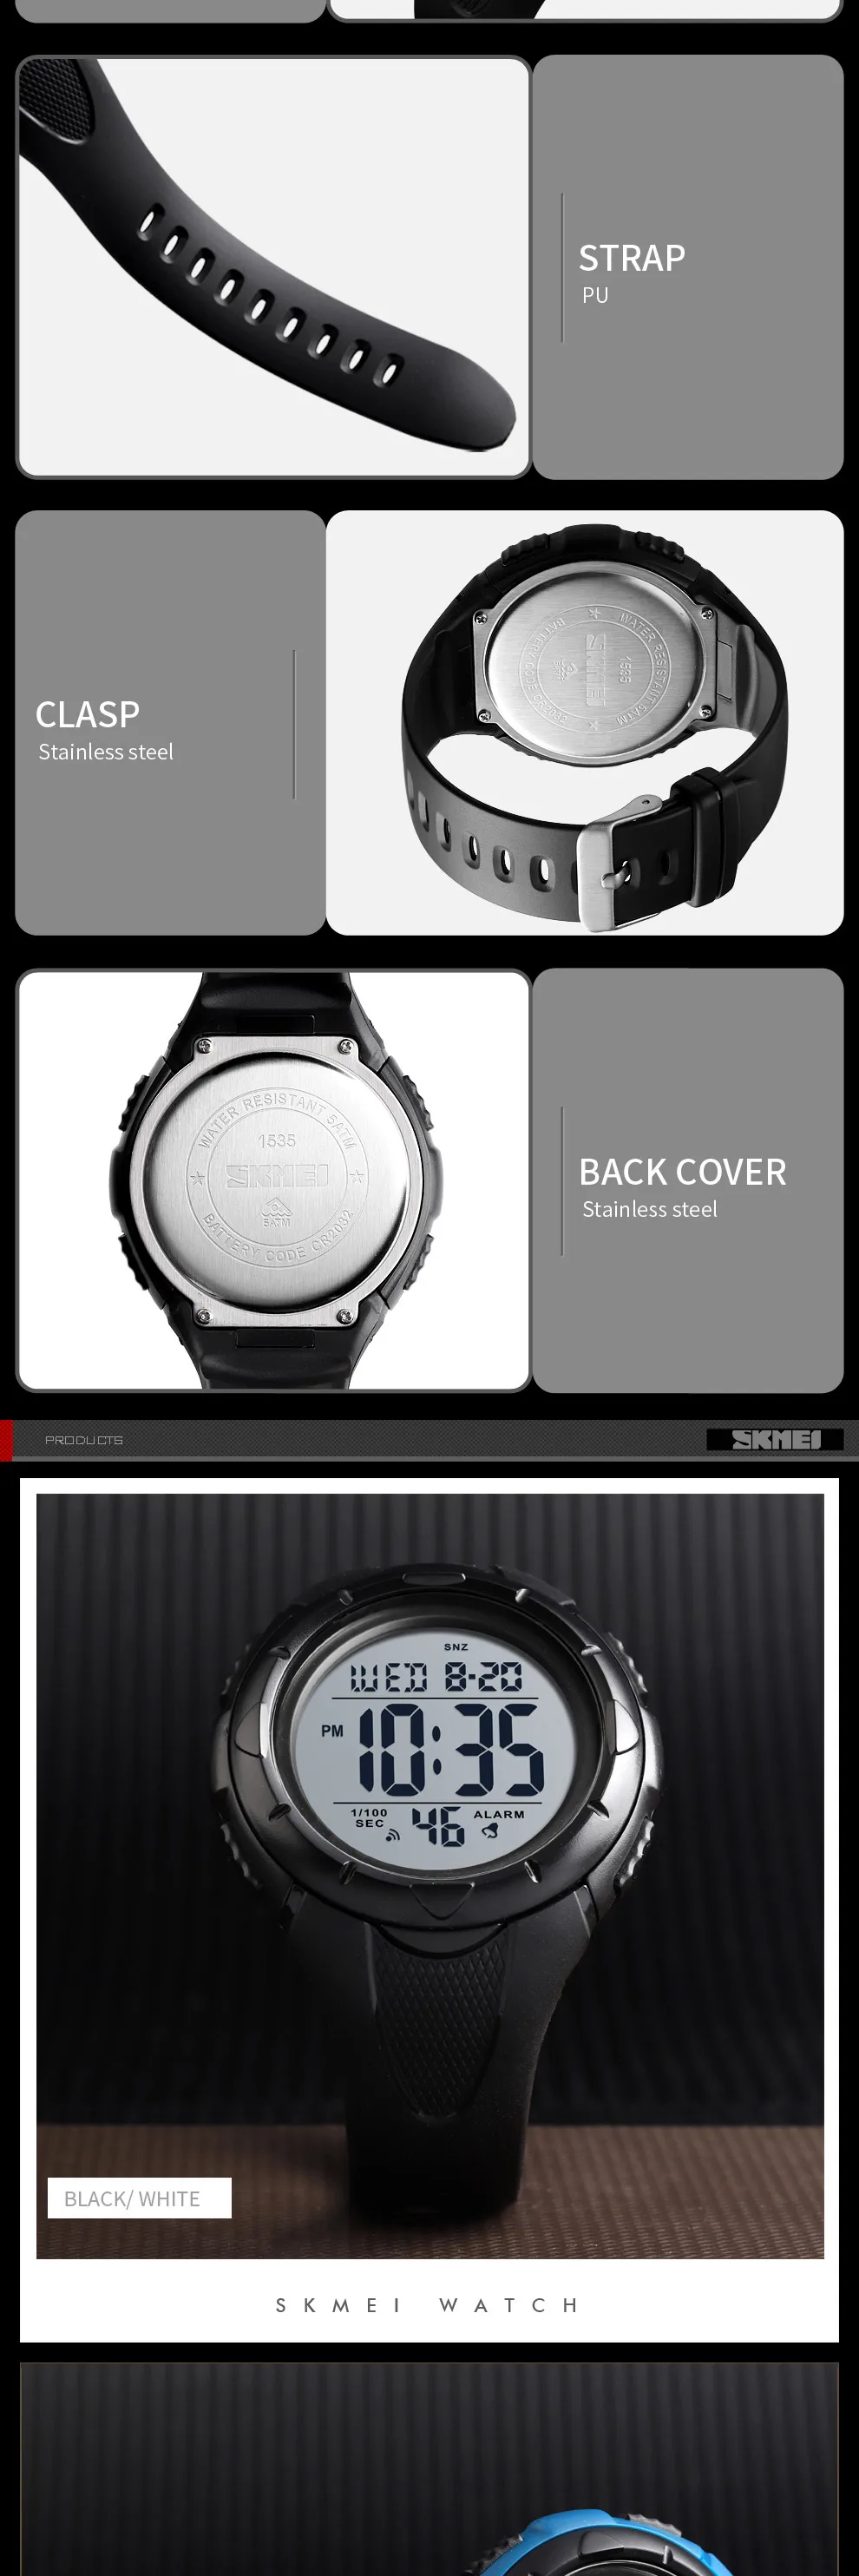 SKMEI новые спортивные часы для мужчин Chrono уличные модные электронные цифровые наручные часы водонепроницаемый светильник дисплей будильник часы montre homme